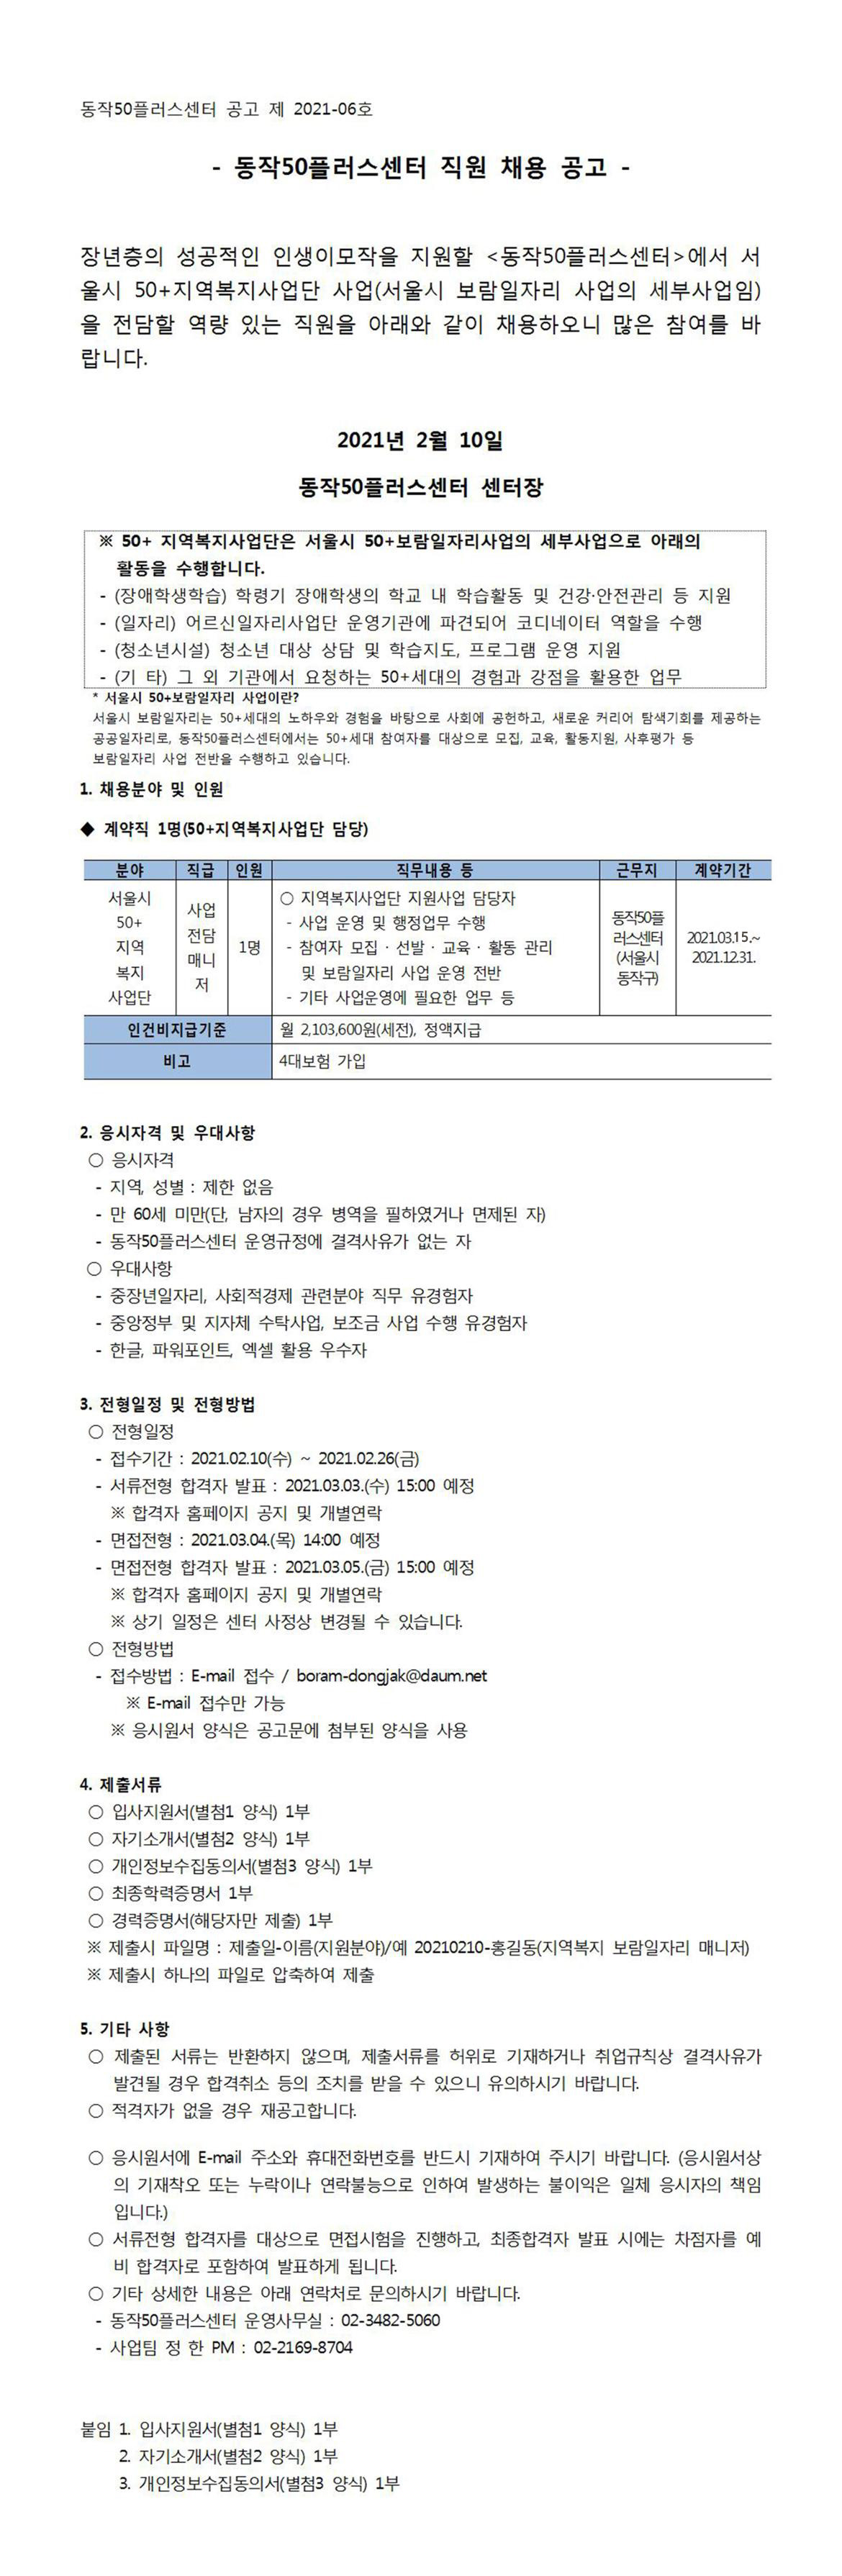 서울시-50%2B지역복지사업단-사업전담매니저-채용공고.jpg